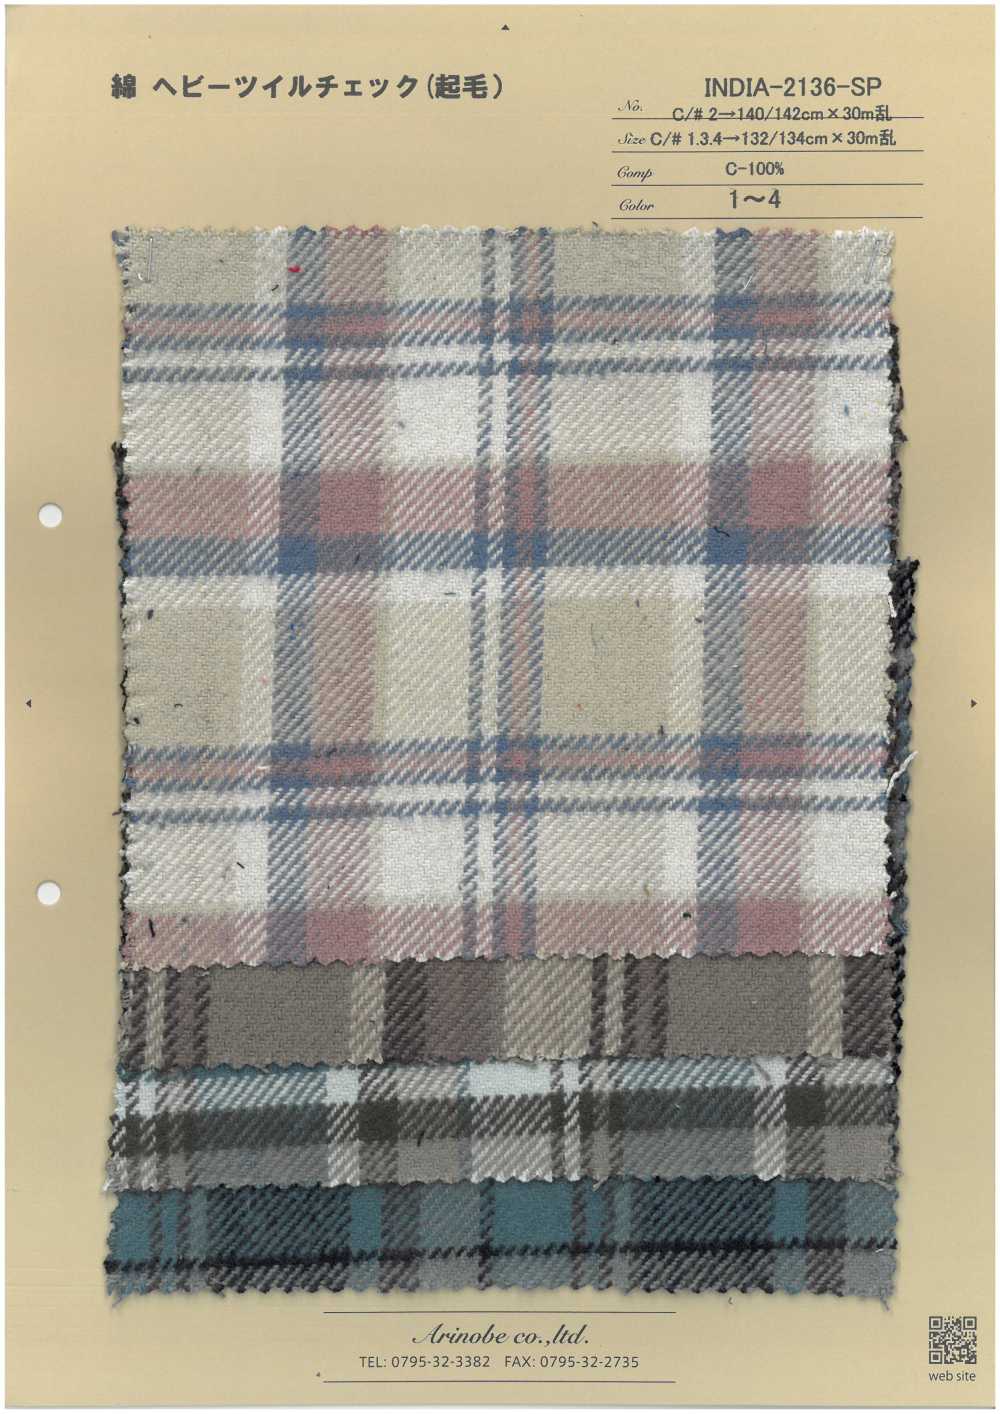 INDIA-2136-SP Cotton Heavy Twill Check (Fuzzy)[Textile / Fabric] ARINOBE CO., LTD.